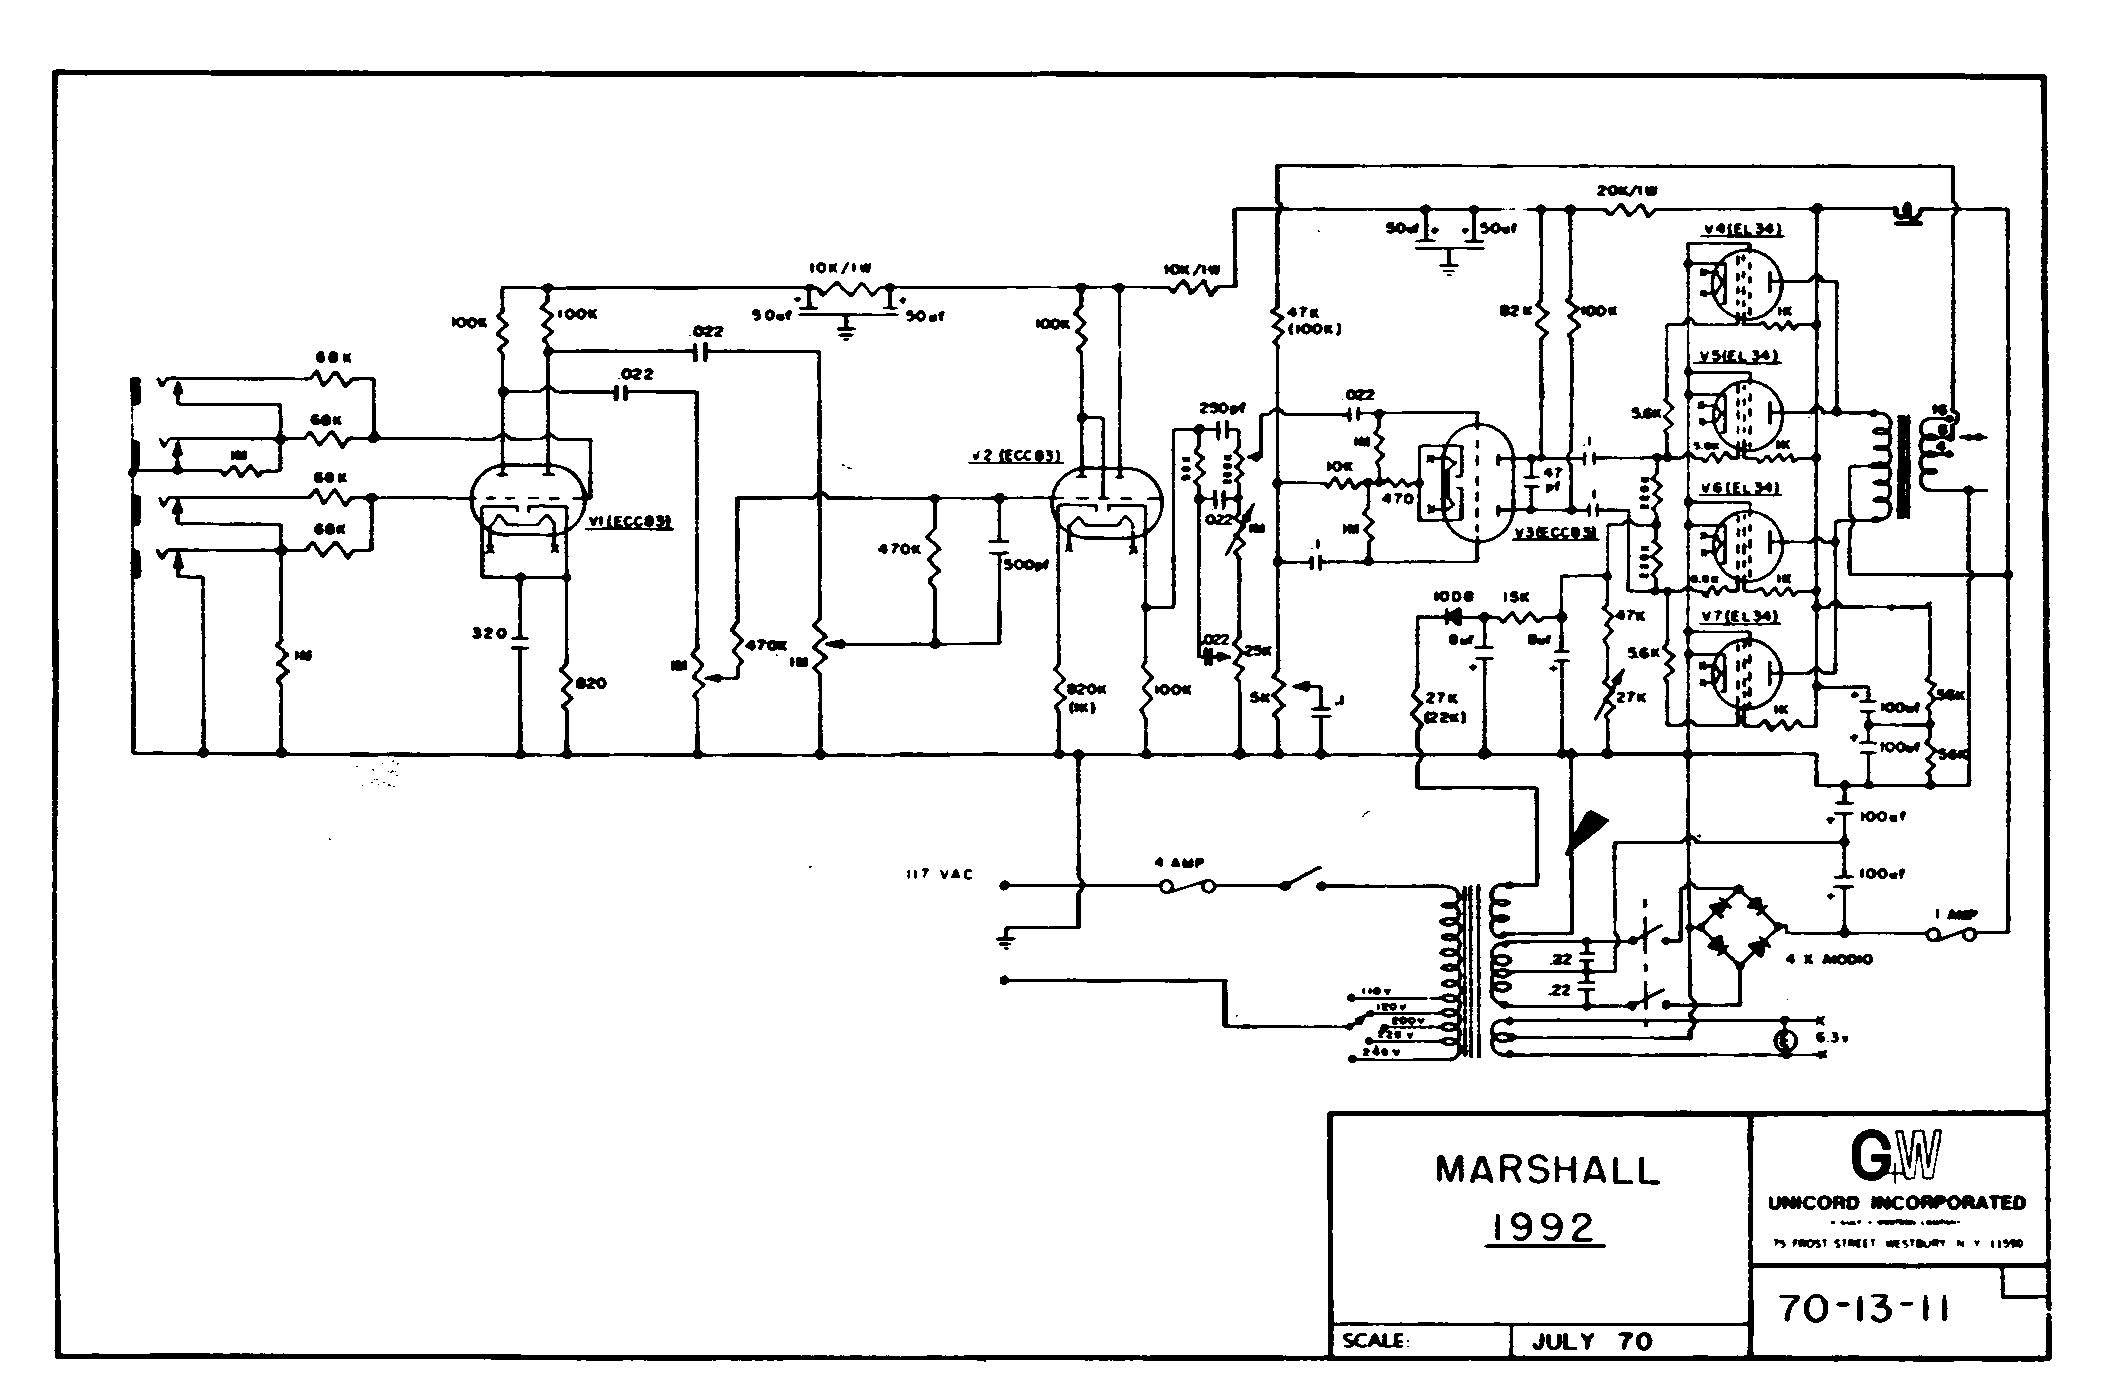 Marshall 1992 Schematic